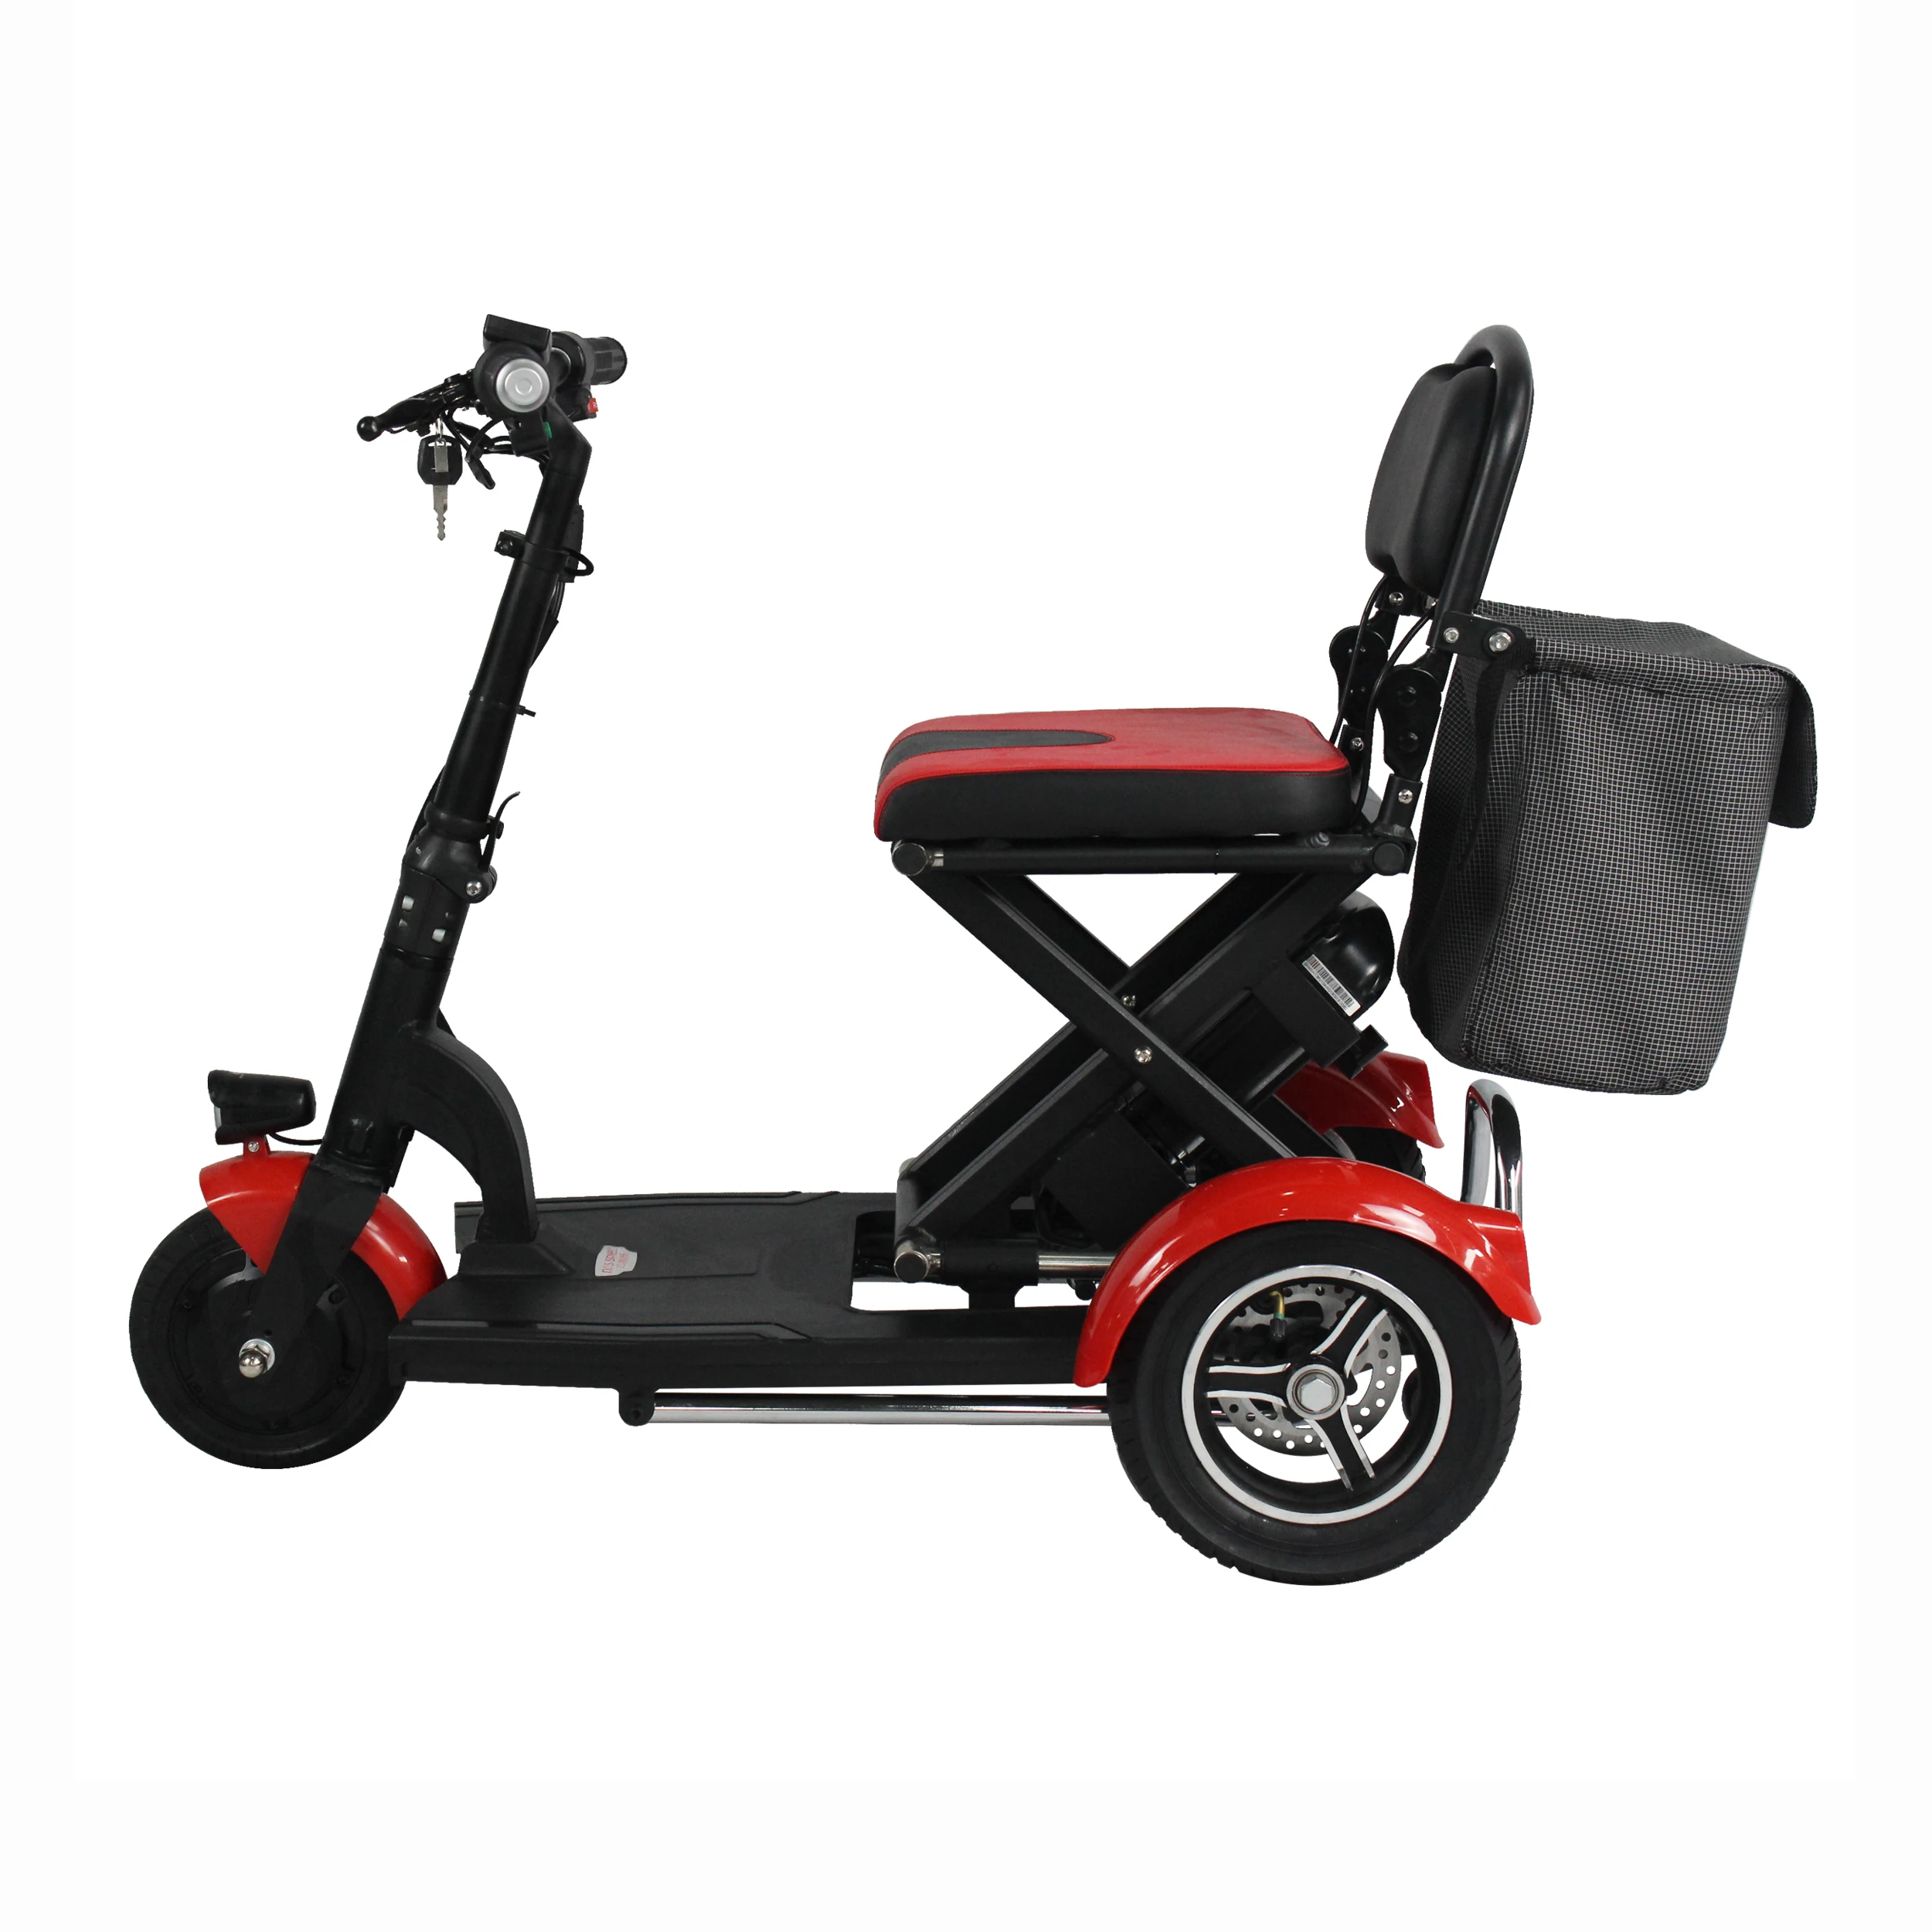 2019 yeni tasarım 3 tekerlekli yaşlı katlanır elektrikli güç hareketlilik scooter